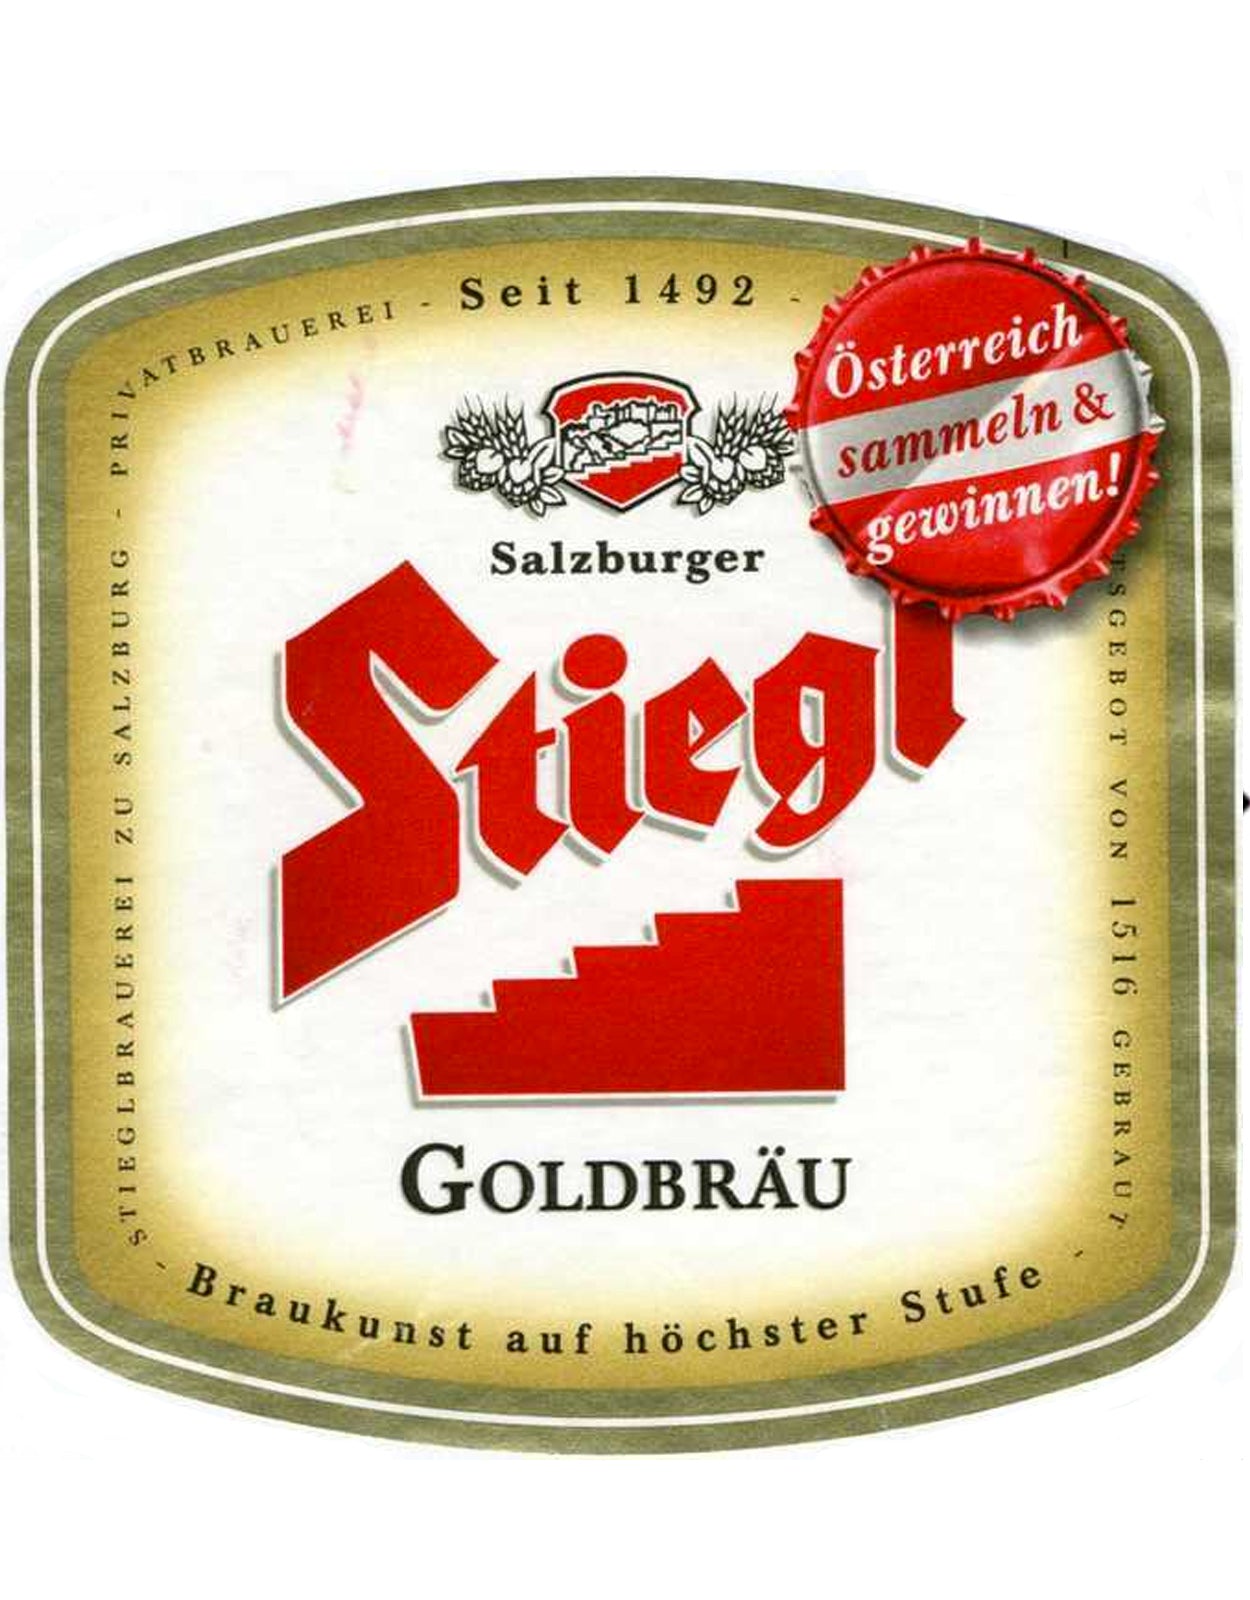 Stiegl Goldbrau - 50 Litre Keg